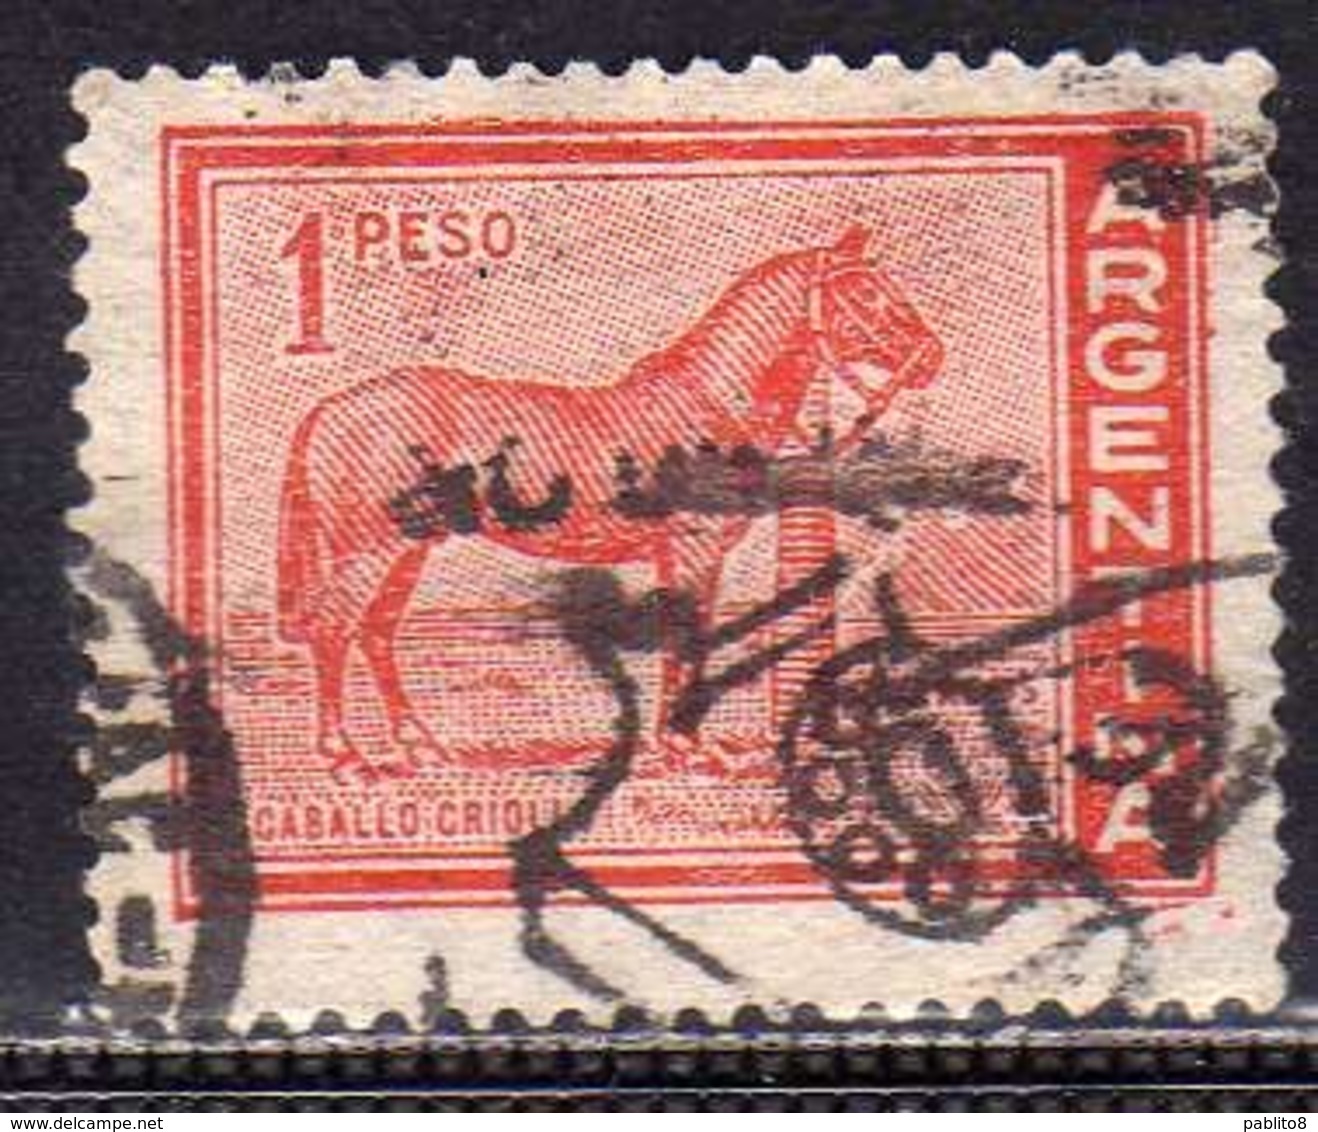 ARGENTINA 1959 1970 FAUNA 1961 ANIMALS DOMESTIC HORSE CAVALLO CABALLO CRIOLLO ANIMALI PESO 1p USATO USED OBLITERE' - Used Stamps